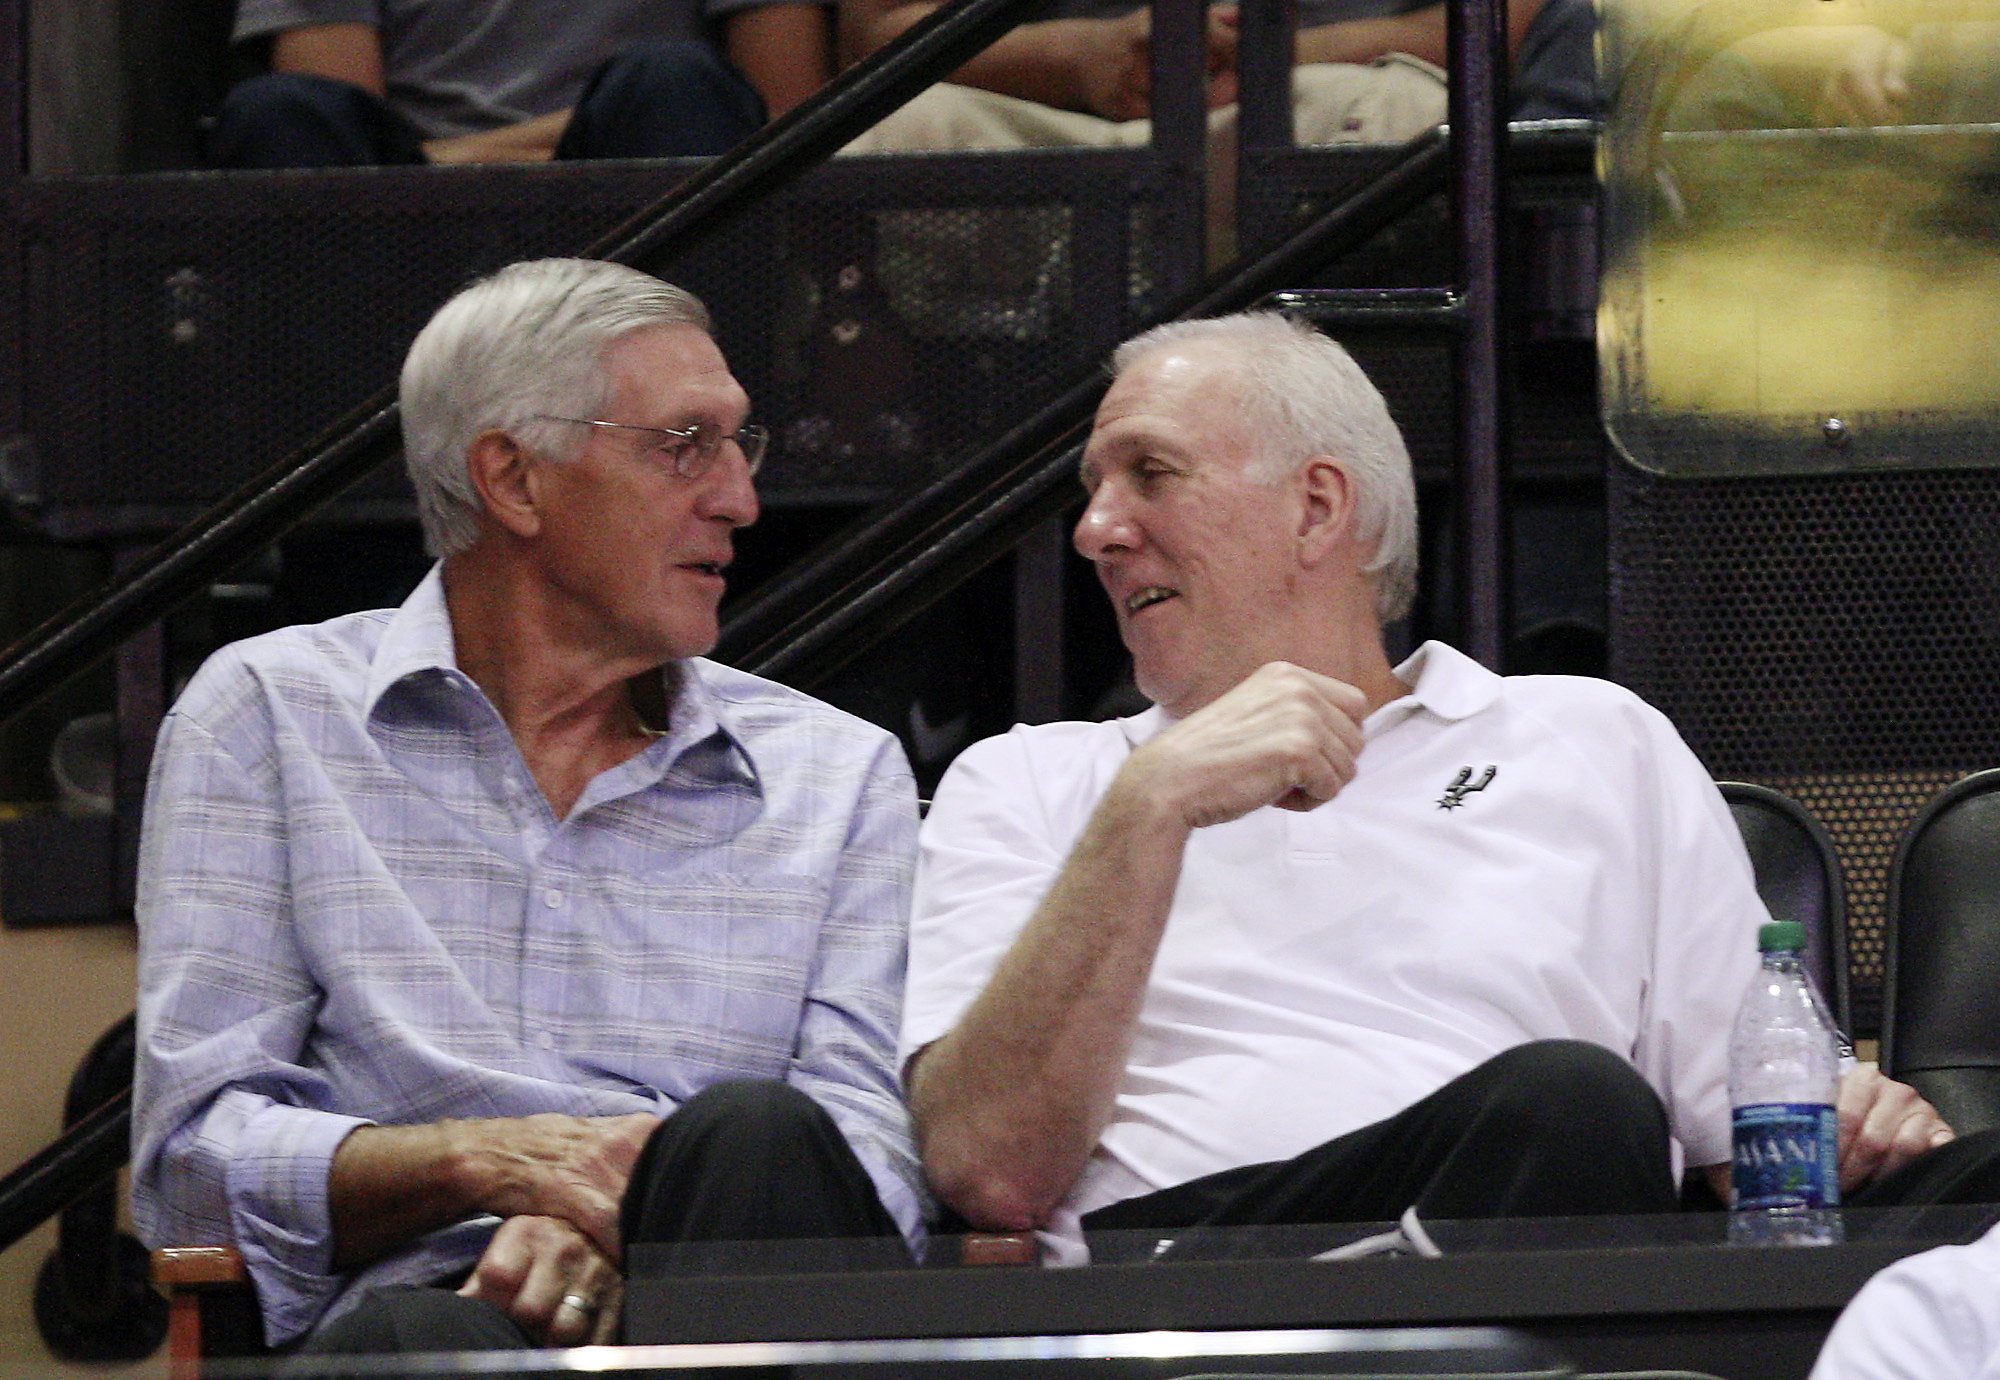 Former Utah Jazz coach Jerry Sloan suffering from Parkinson's disease